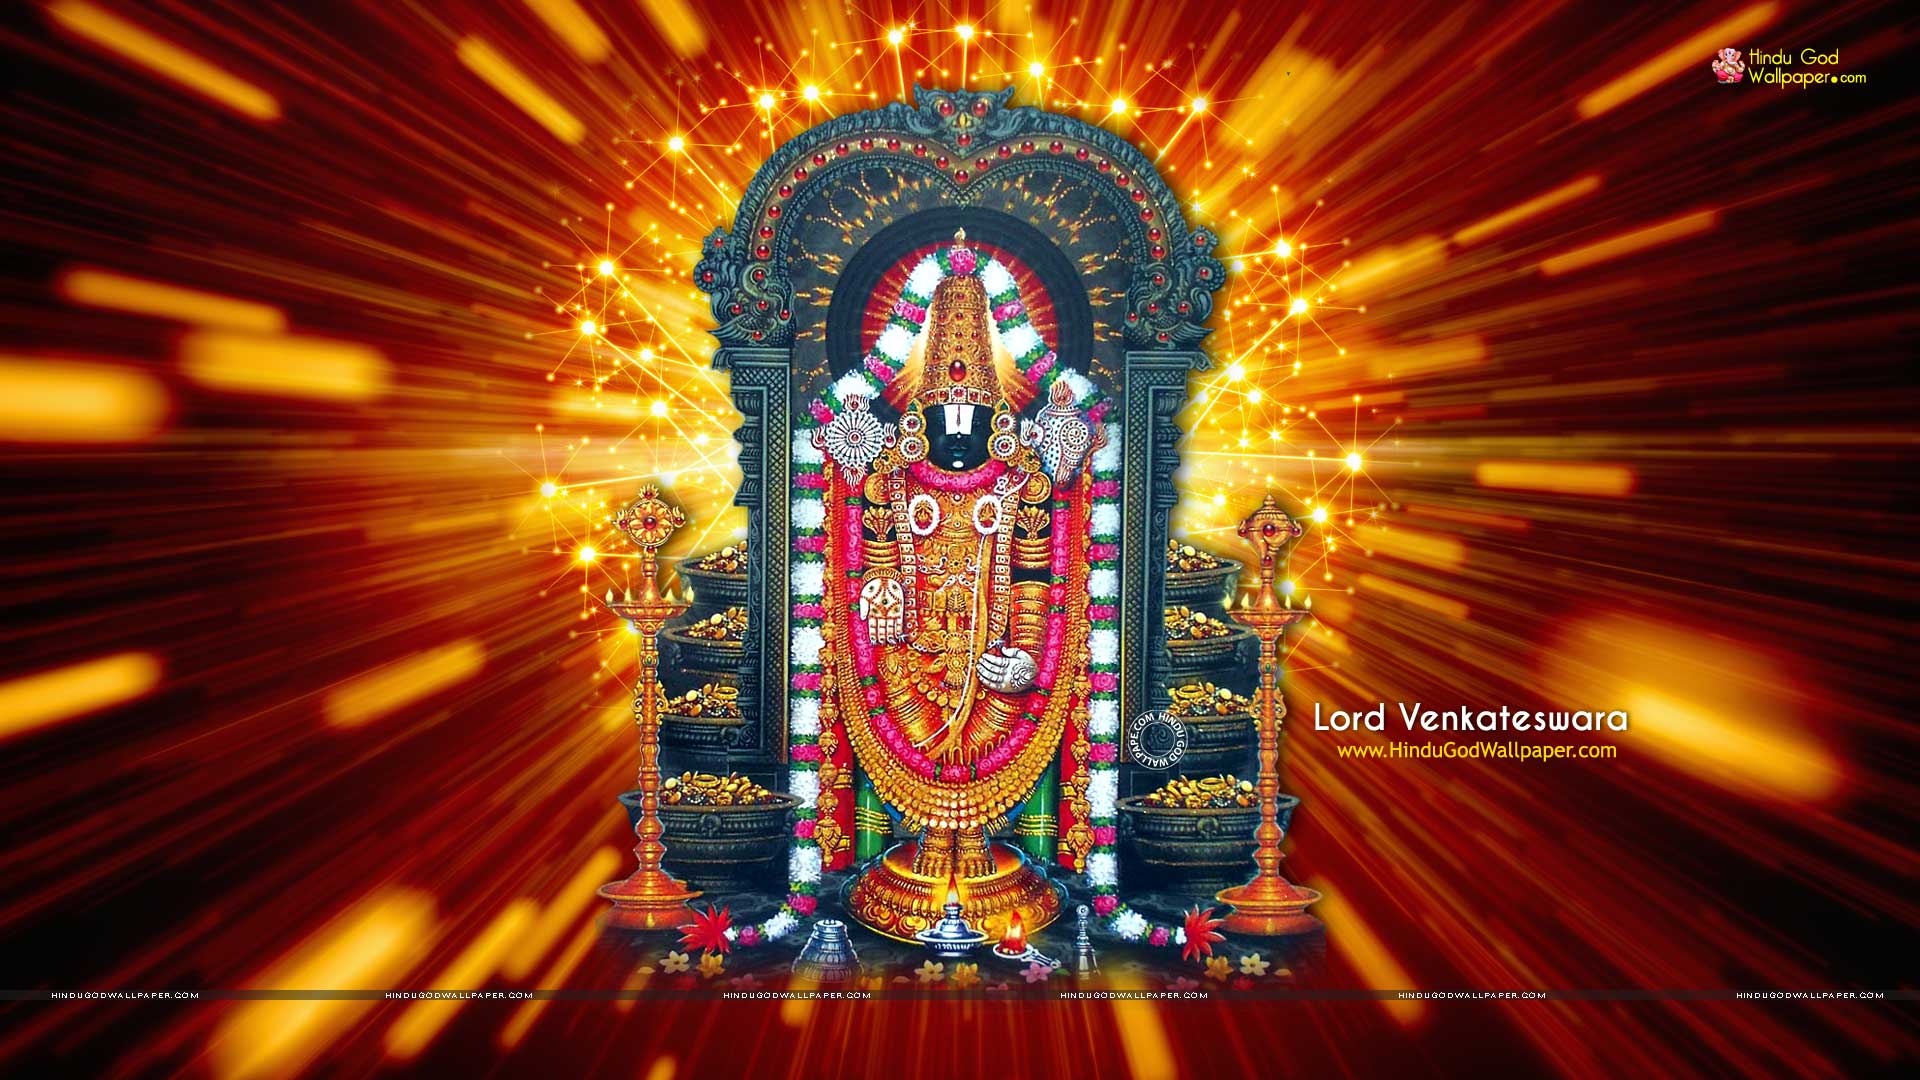 1080p Lord Venkateswara HD Wallpaper Free Download